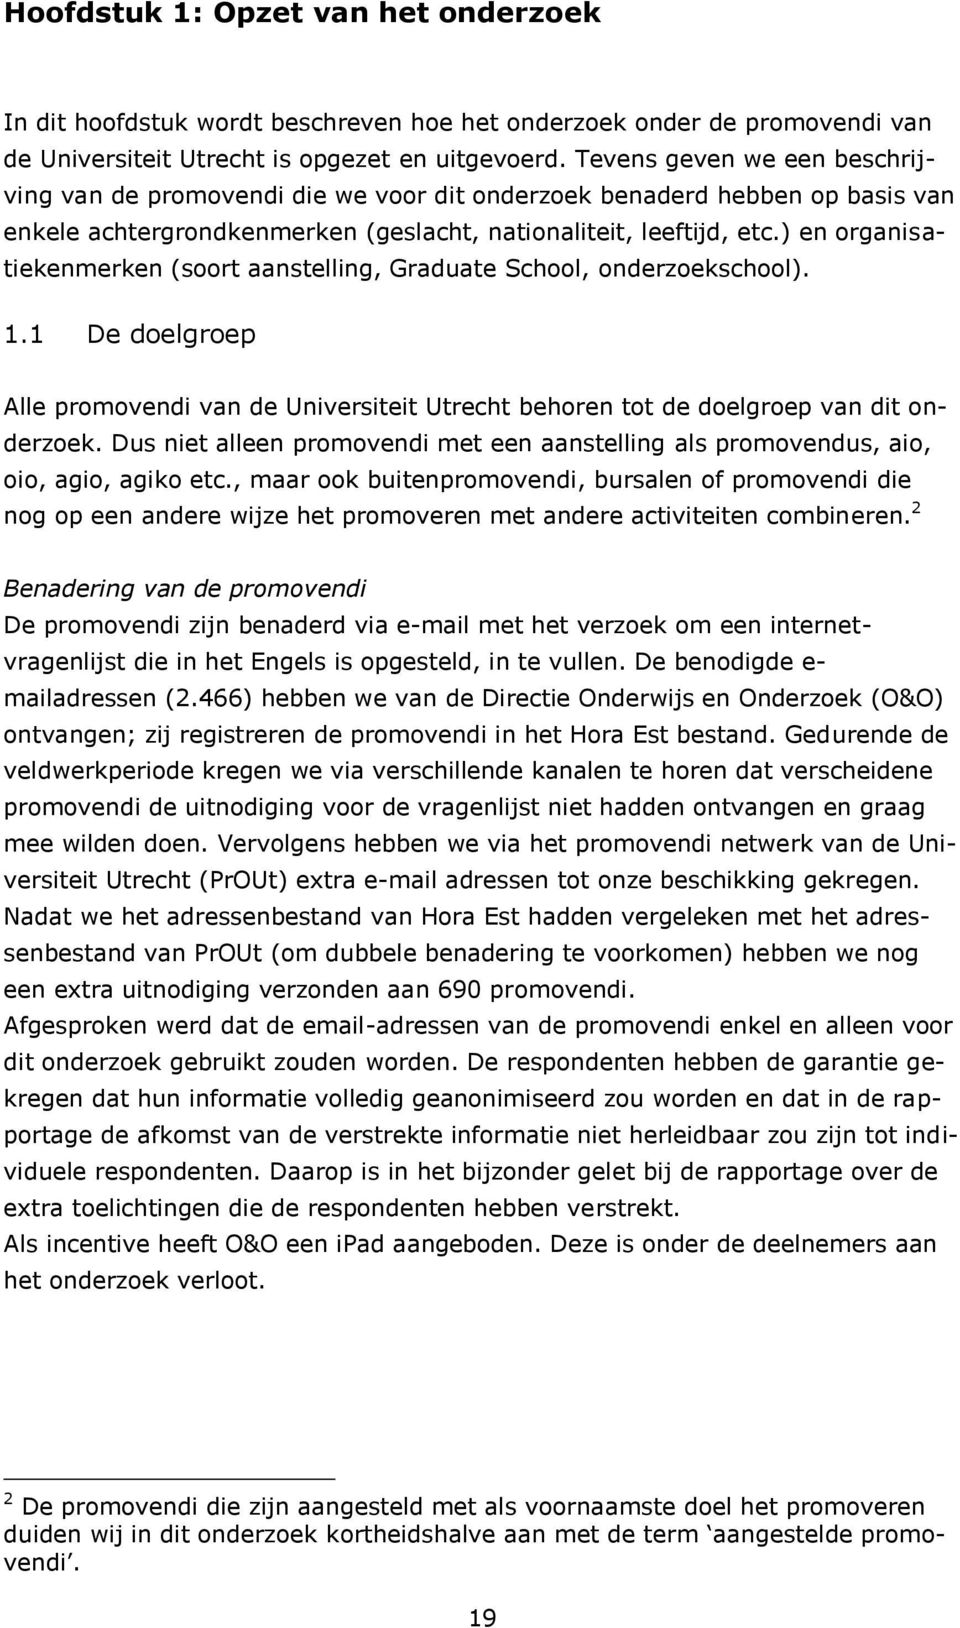 ) en organisatiekenmerken (soort aanstelling, Graduate School, onderzoekschool). 1.1 De doelgroep Alle promovendi van de Universiteit Utrecht behoren tot de doelgroep van dit onderzoek.